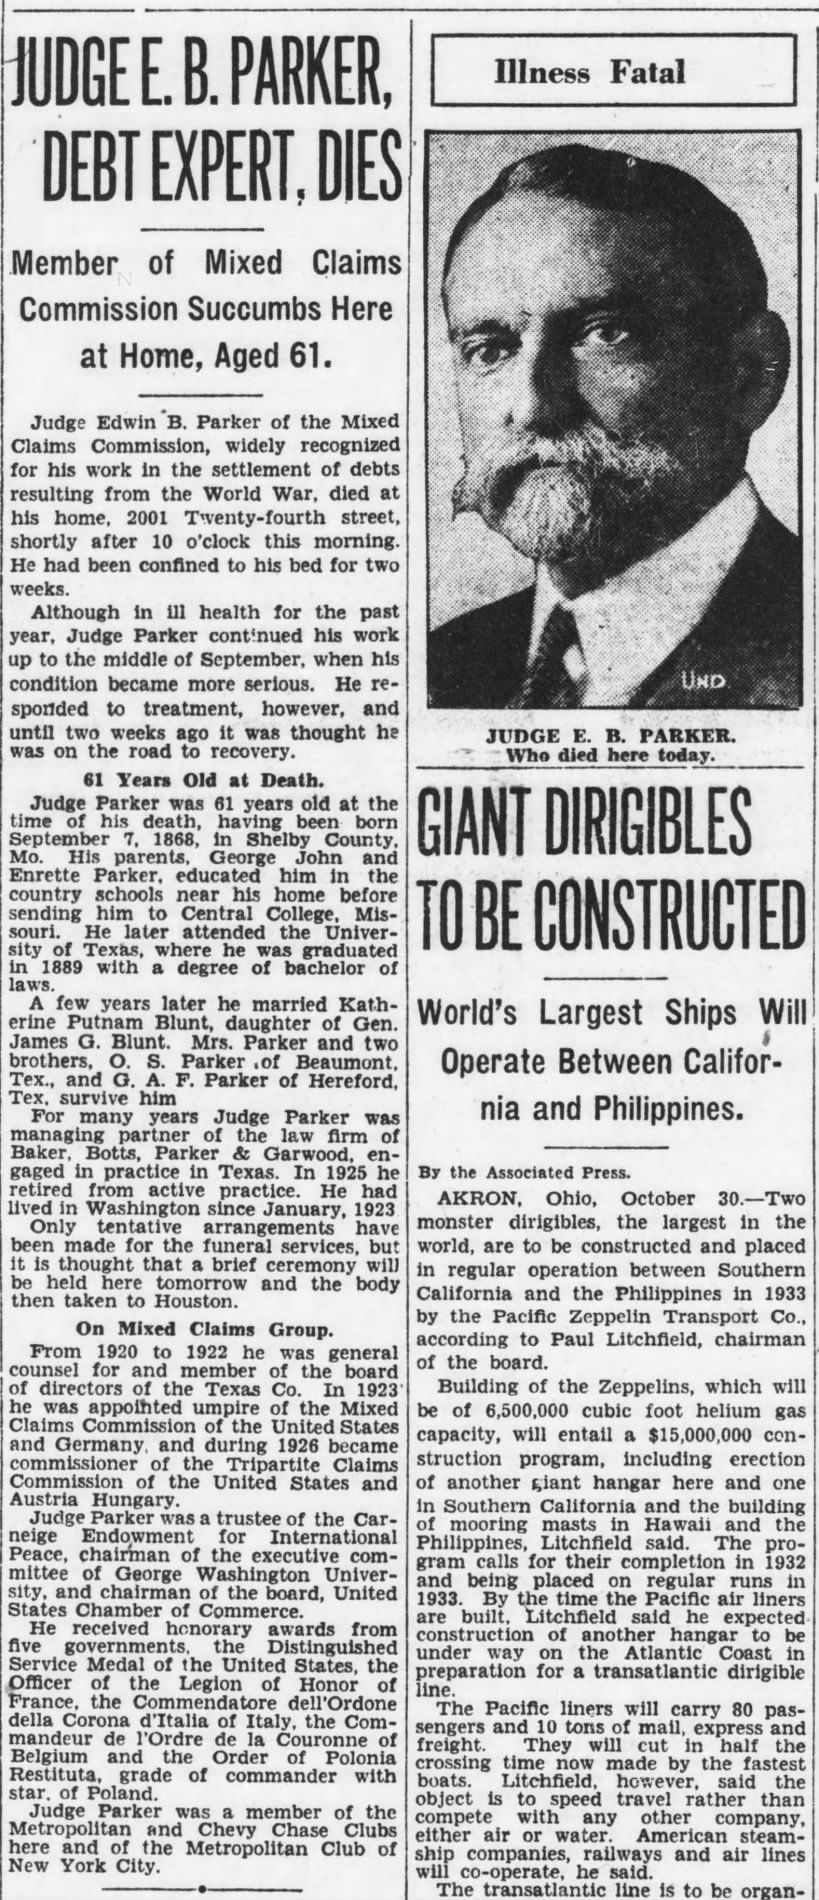 Judge E. B. Parker, Debt Expert, Dies; 30 Oct 1929; The Evening Star; 1